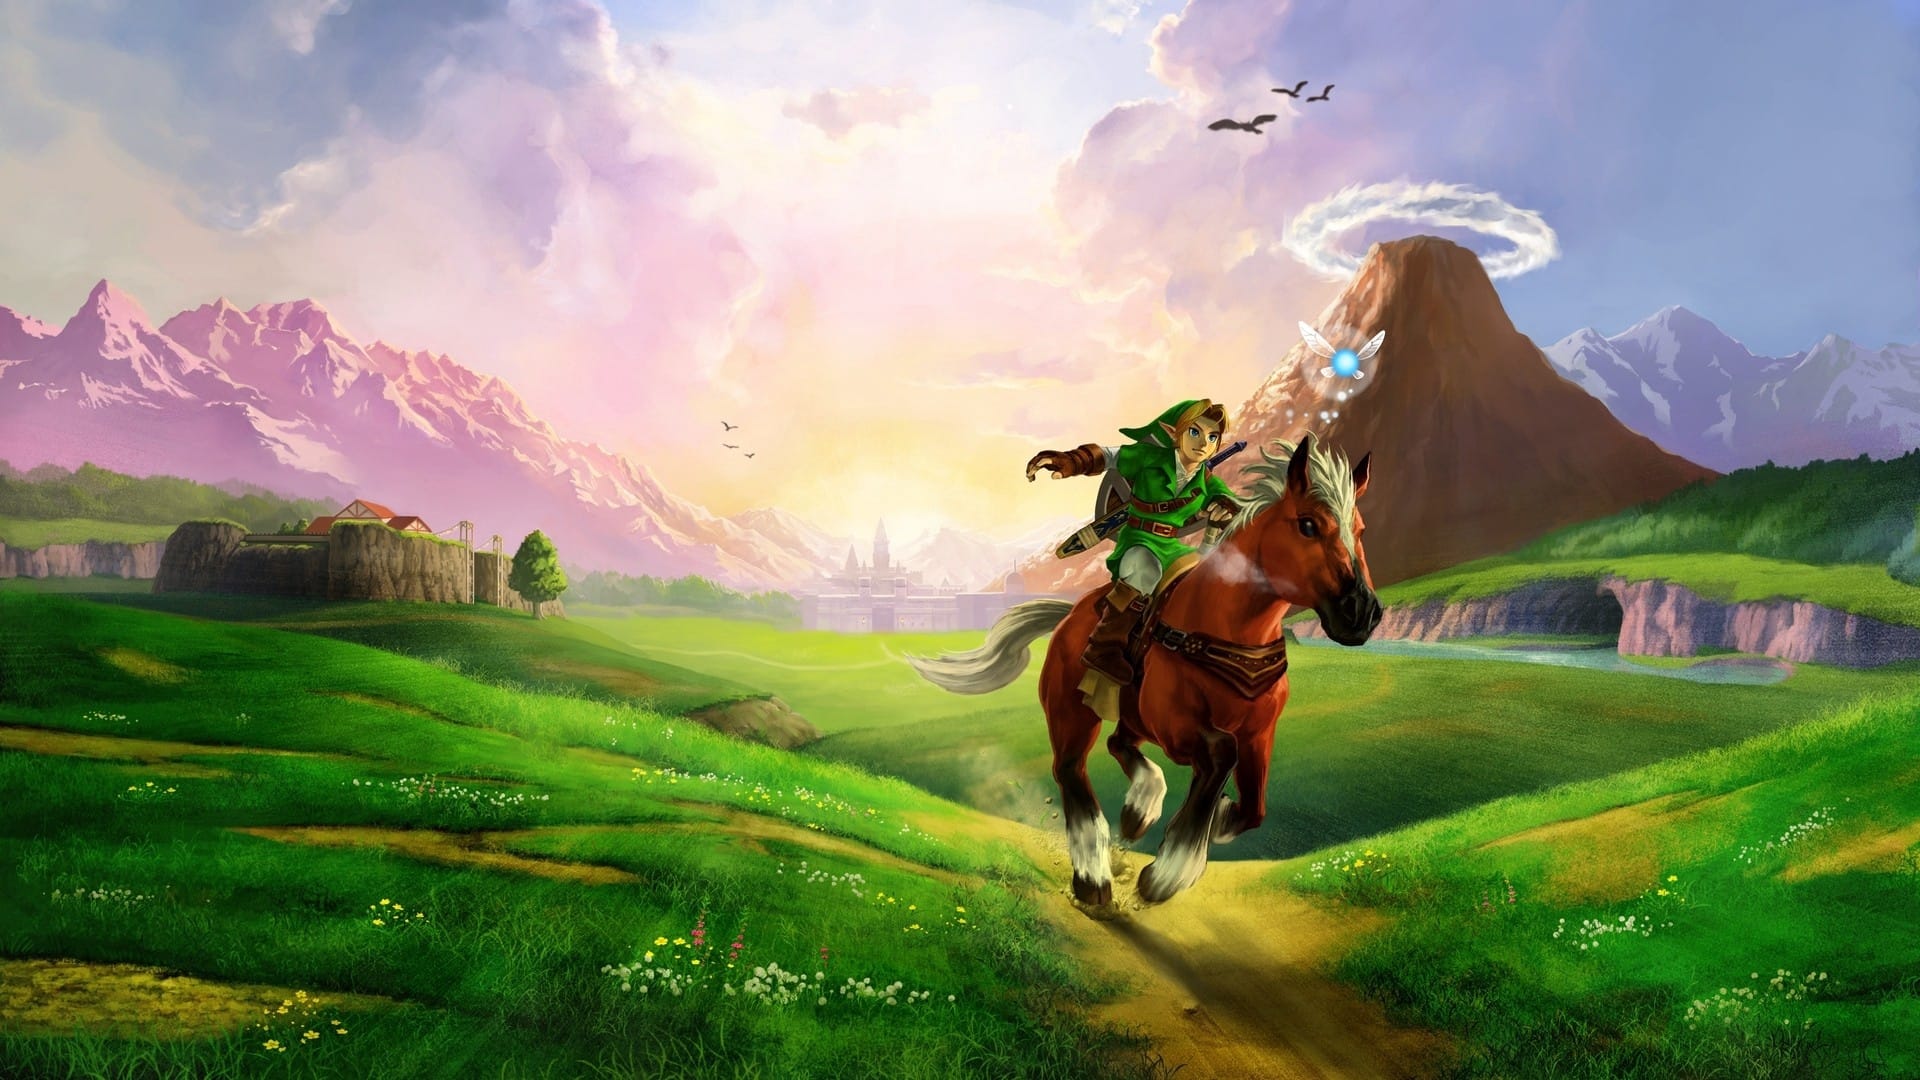 1. The Legend of Zelda.